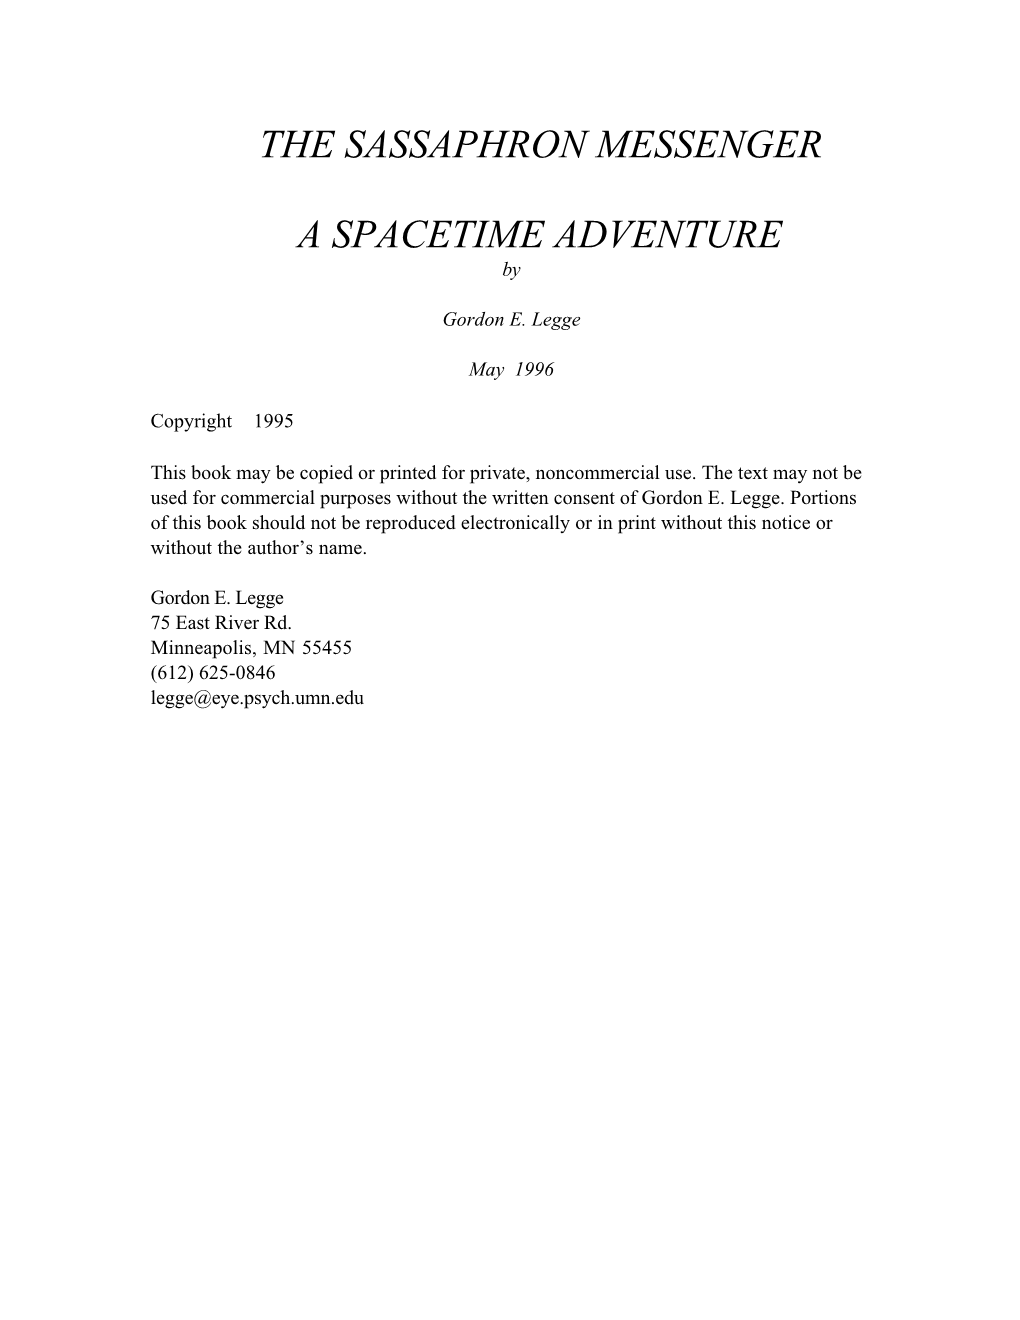 The Sassaphron Messenger a Spacetime Adventure